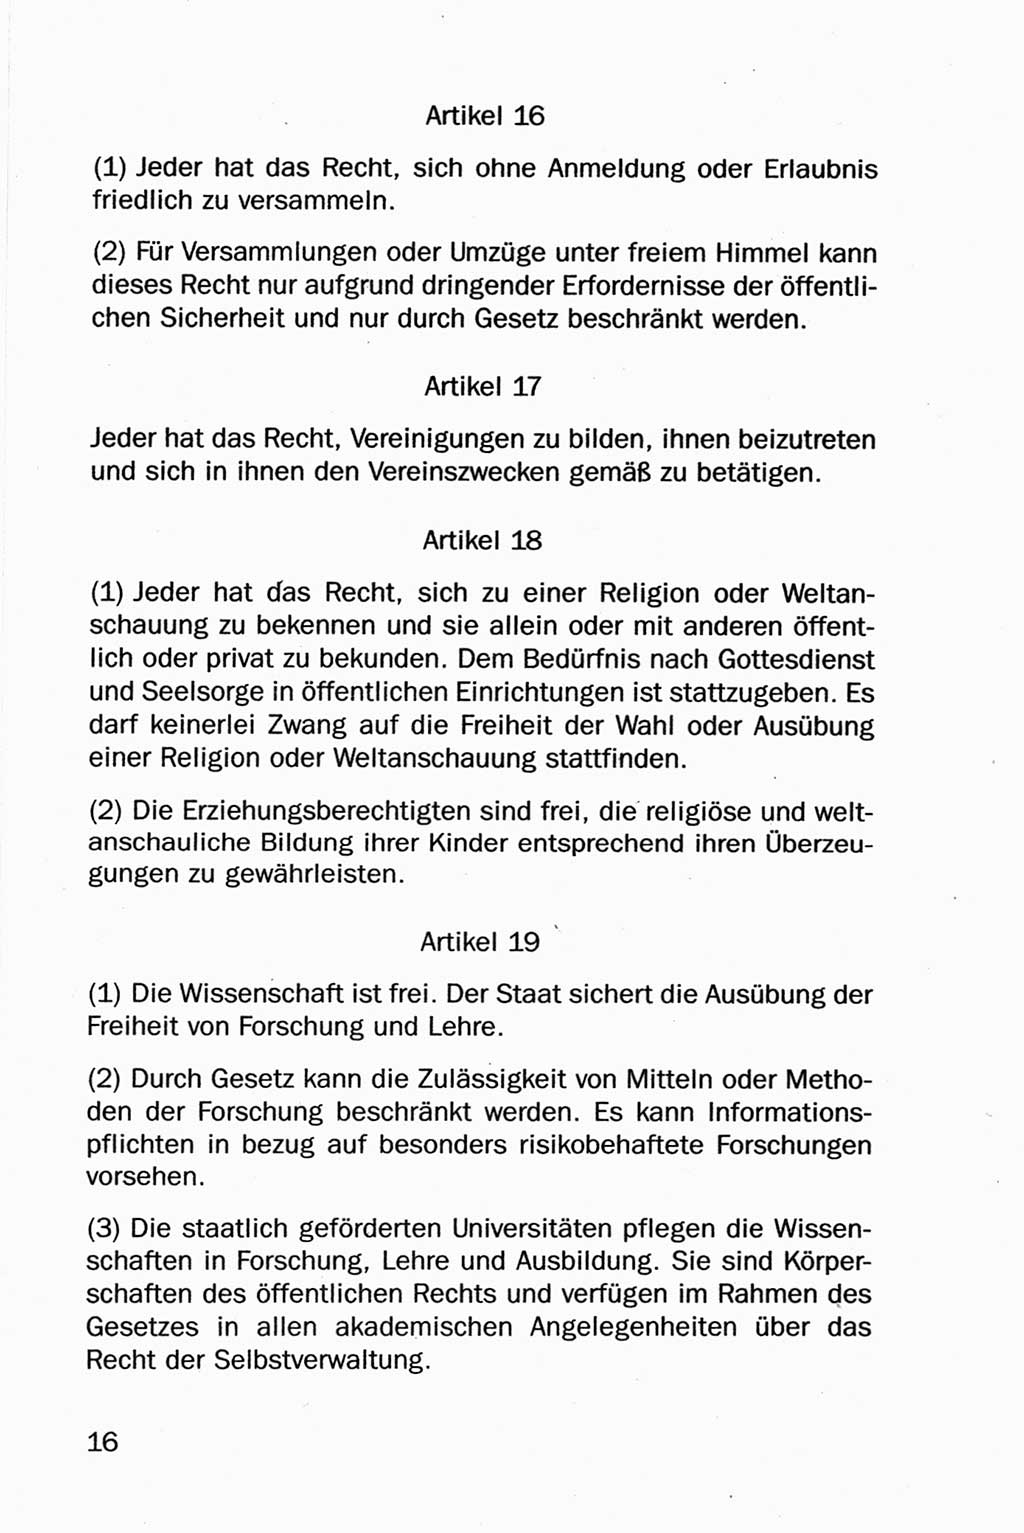 Entwurf Verfassung der Deutschen Demokratischen Republik (DDR), Arbeitsgruppe "Neue Verfassung der DDR" des Runden Tisches, Berlin 1990, Seite 16 (Entw. Verf. DDR 1990, S. 16)